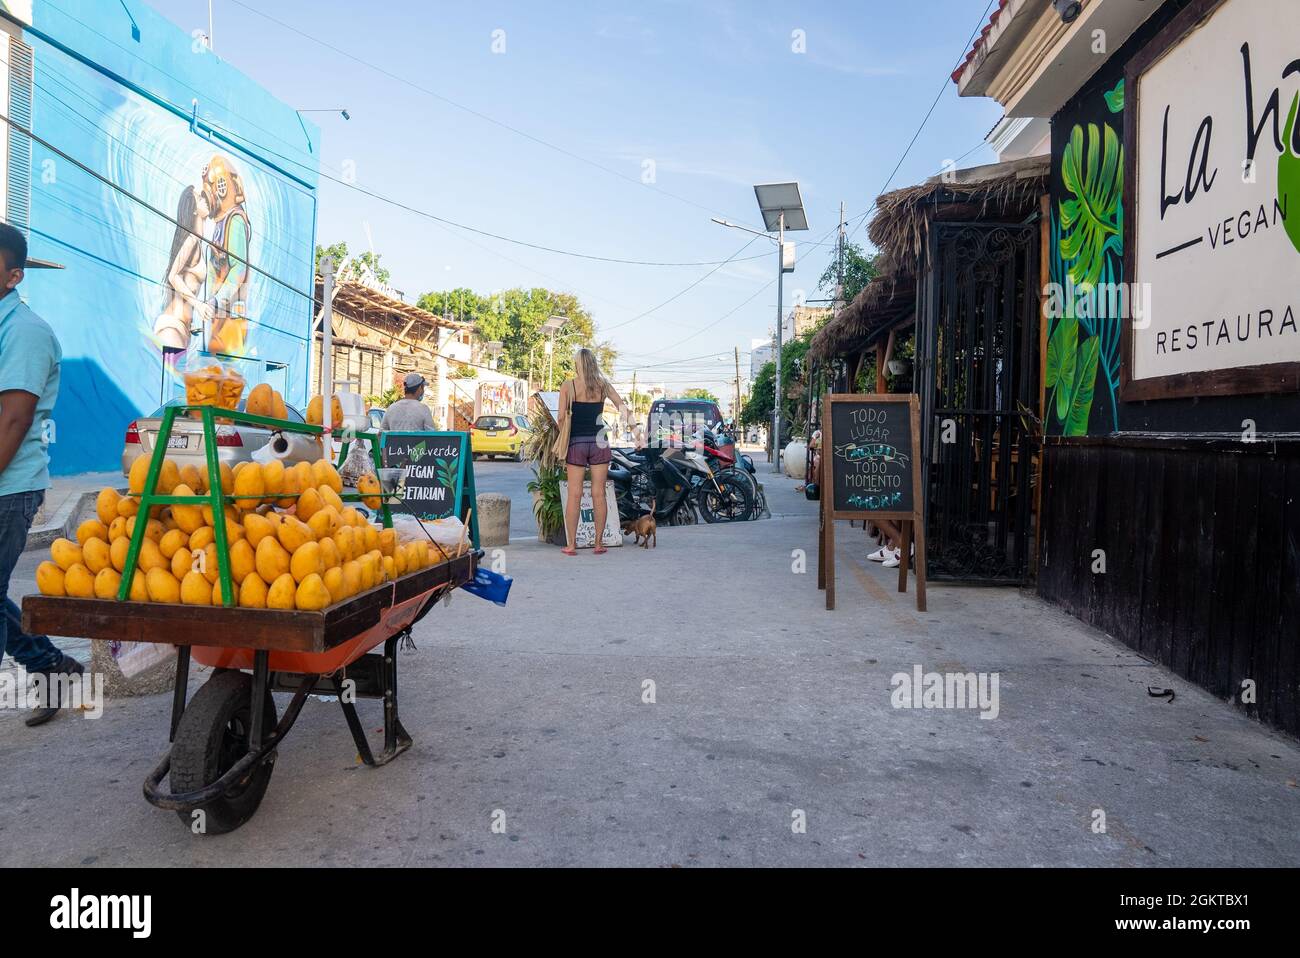 Mango-Obstwagen mit Fußgängern im Restaurant am Straßenrand mit Schildern Stockfoto